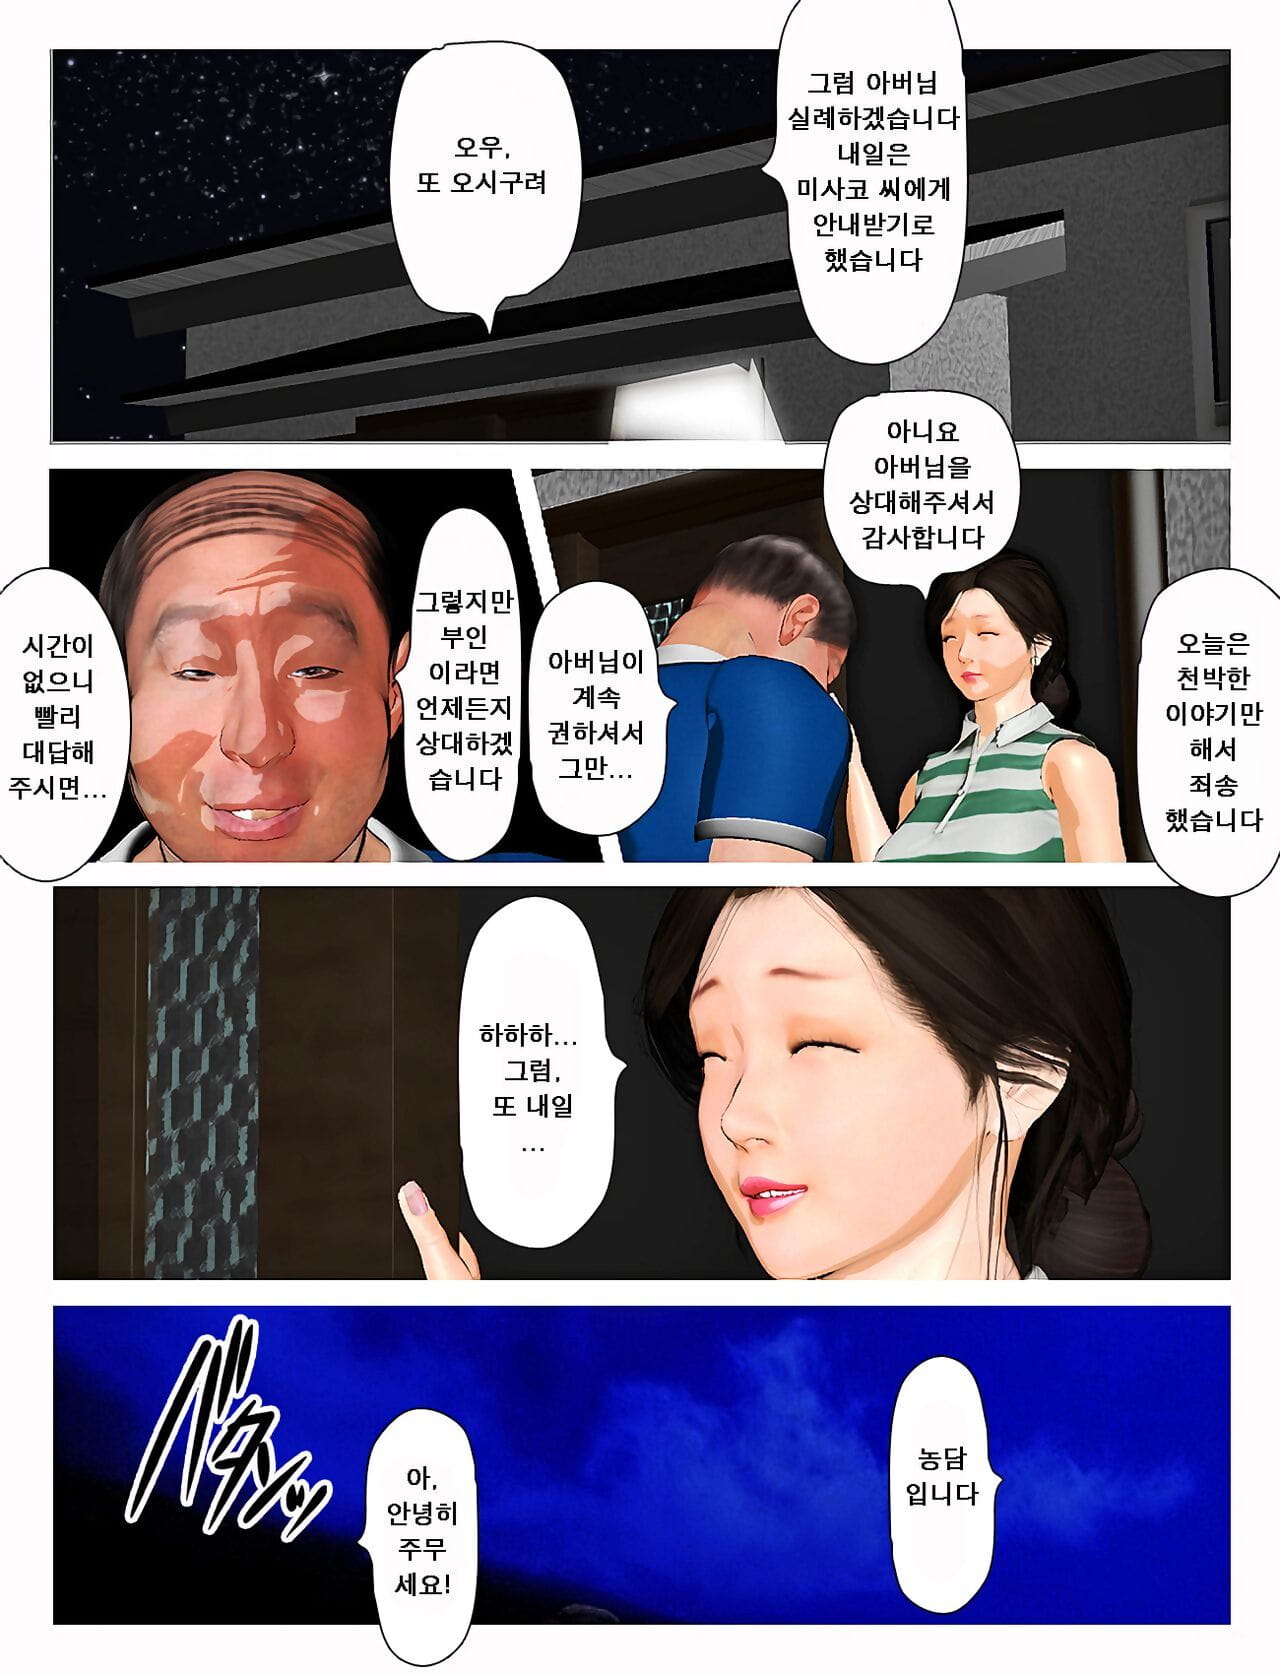 Kyou pas de misako san 2019:2 오늘의 미사코씨 2019:2 page 1